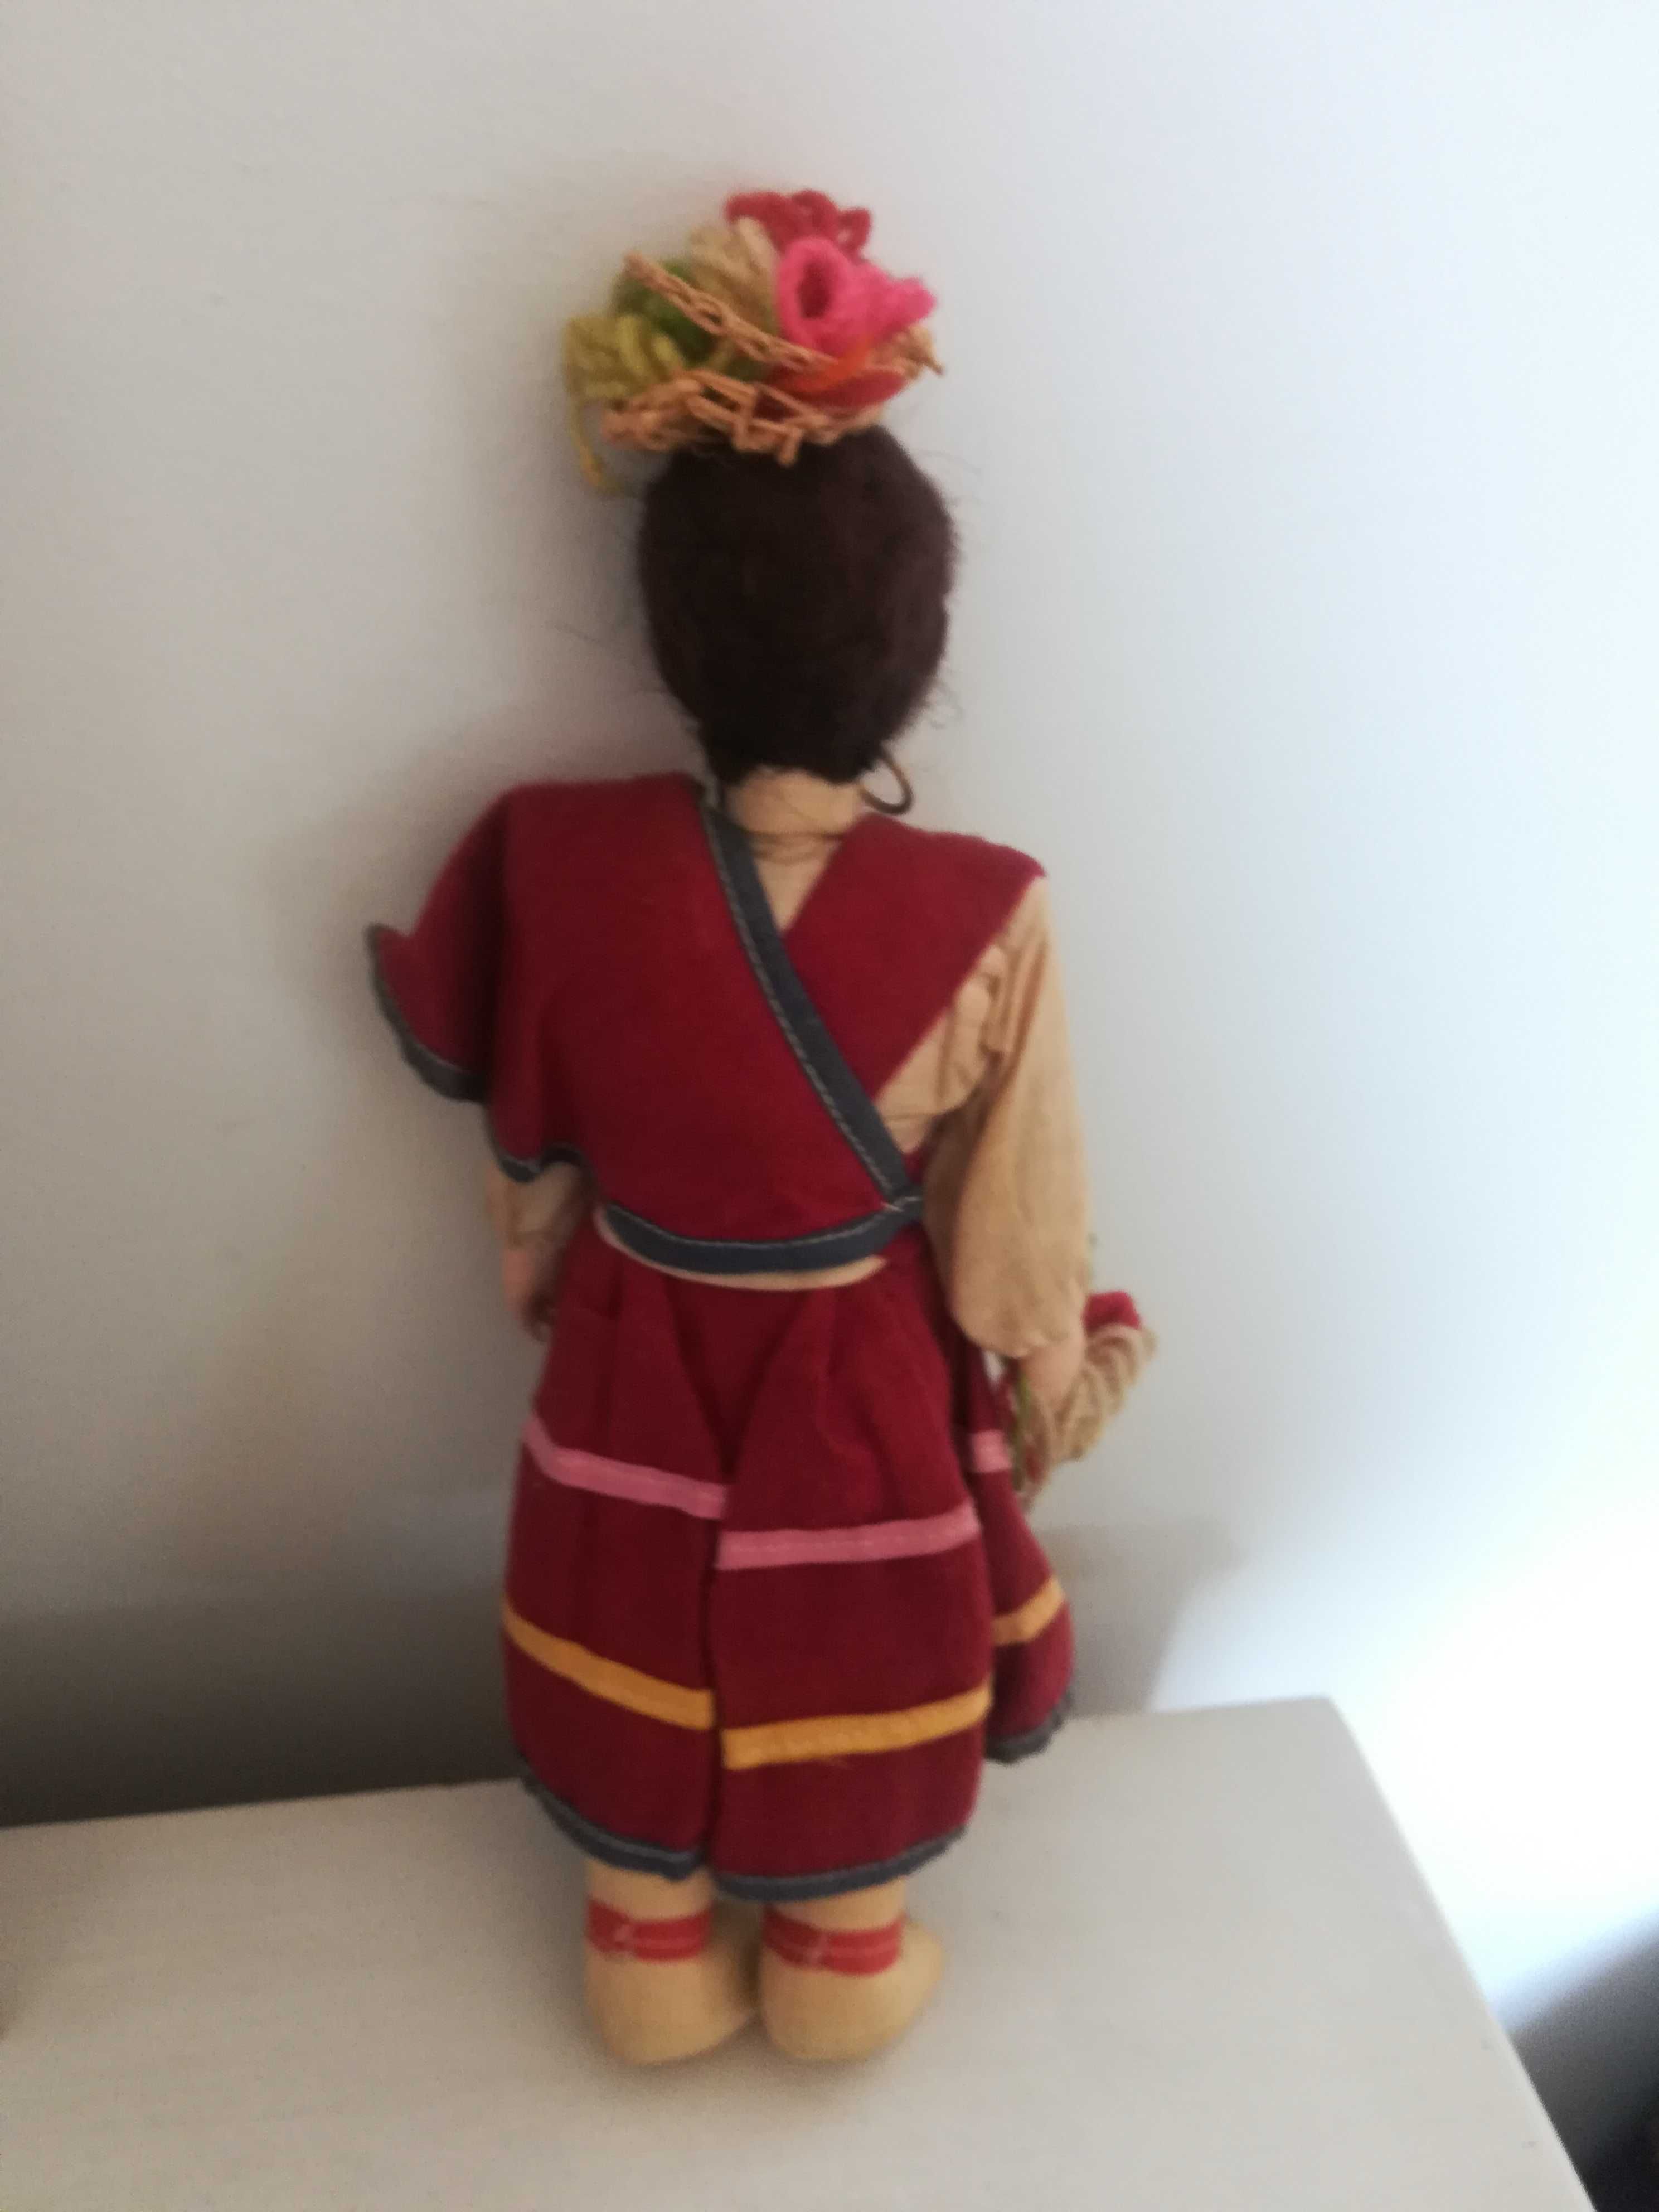 Antiga boneca na caixa lacrada com roupas típicas feito